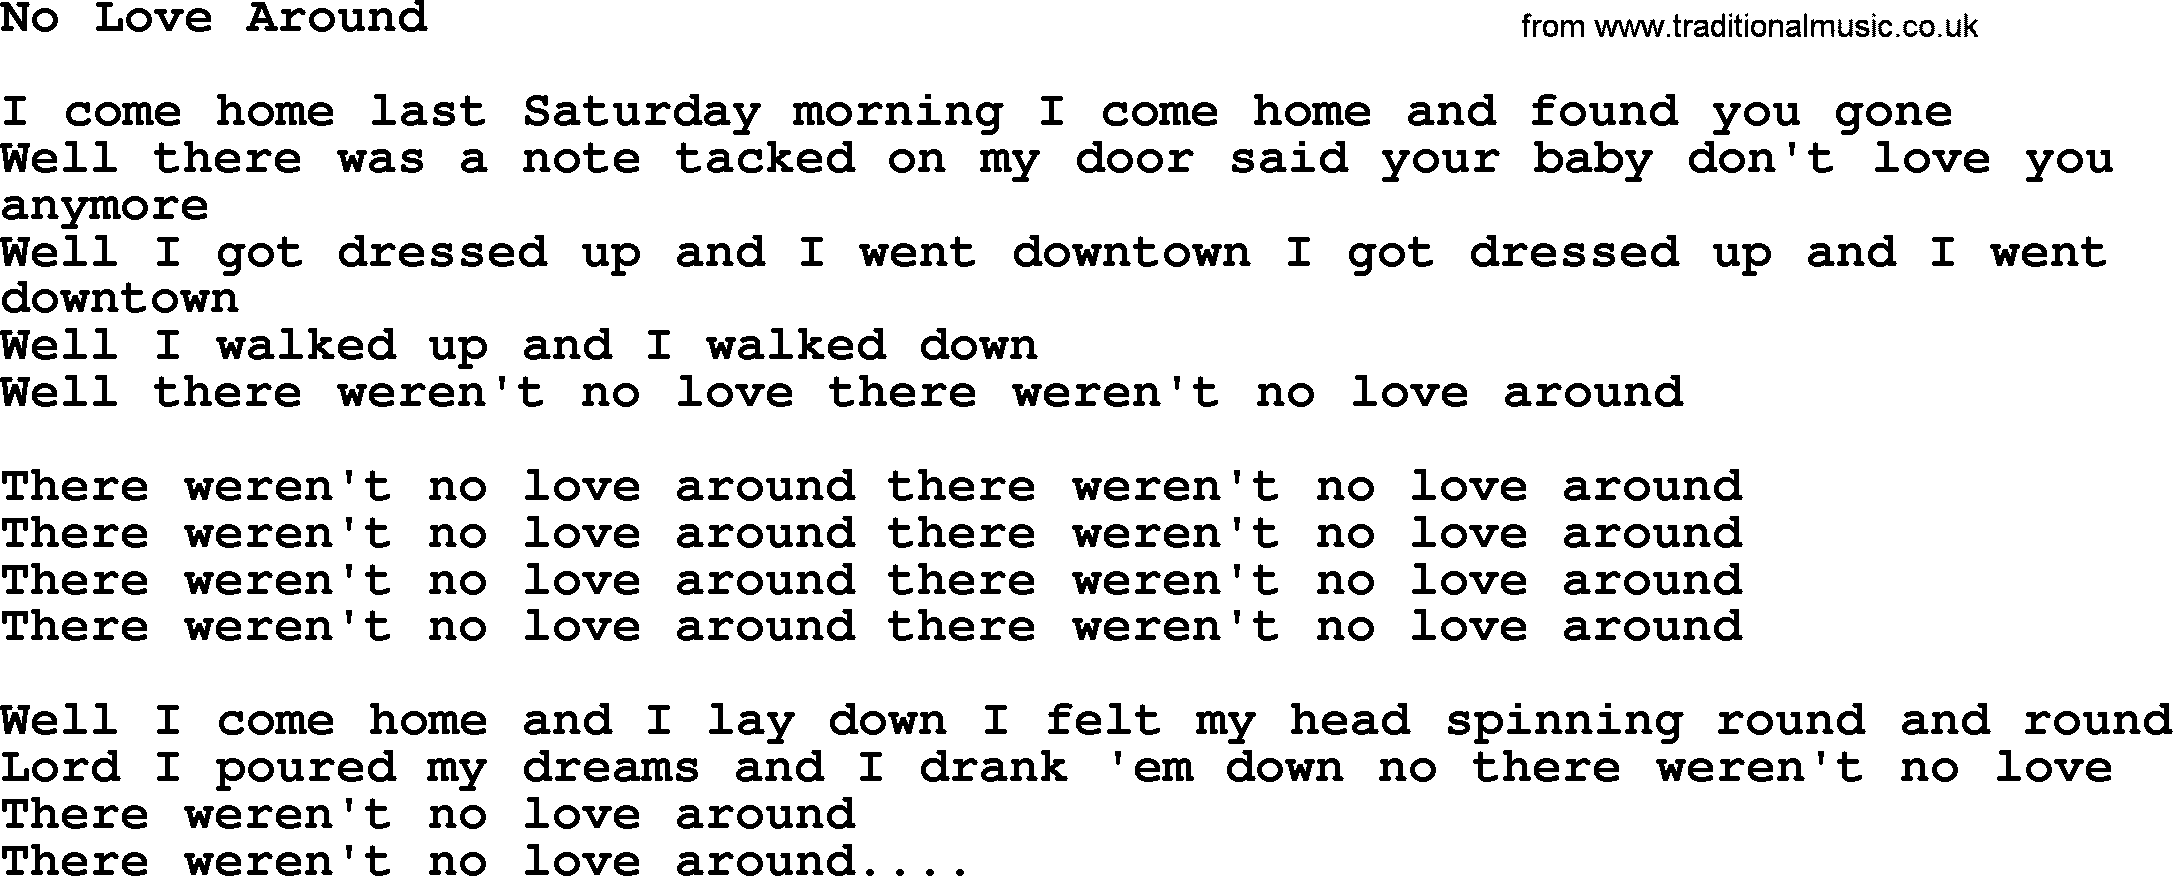 Willie Nelson song: No Love Around lyrics